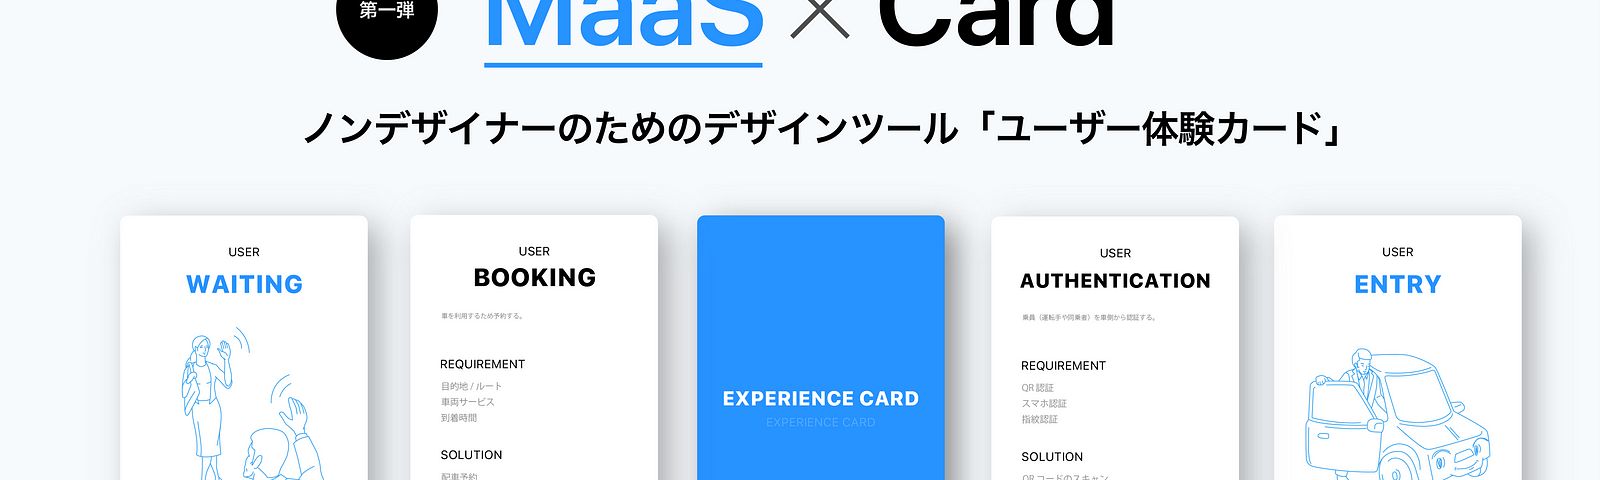 MaaS x Card